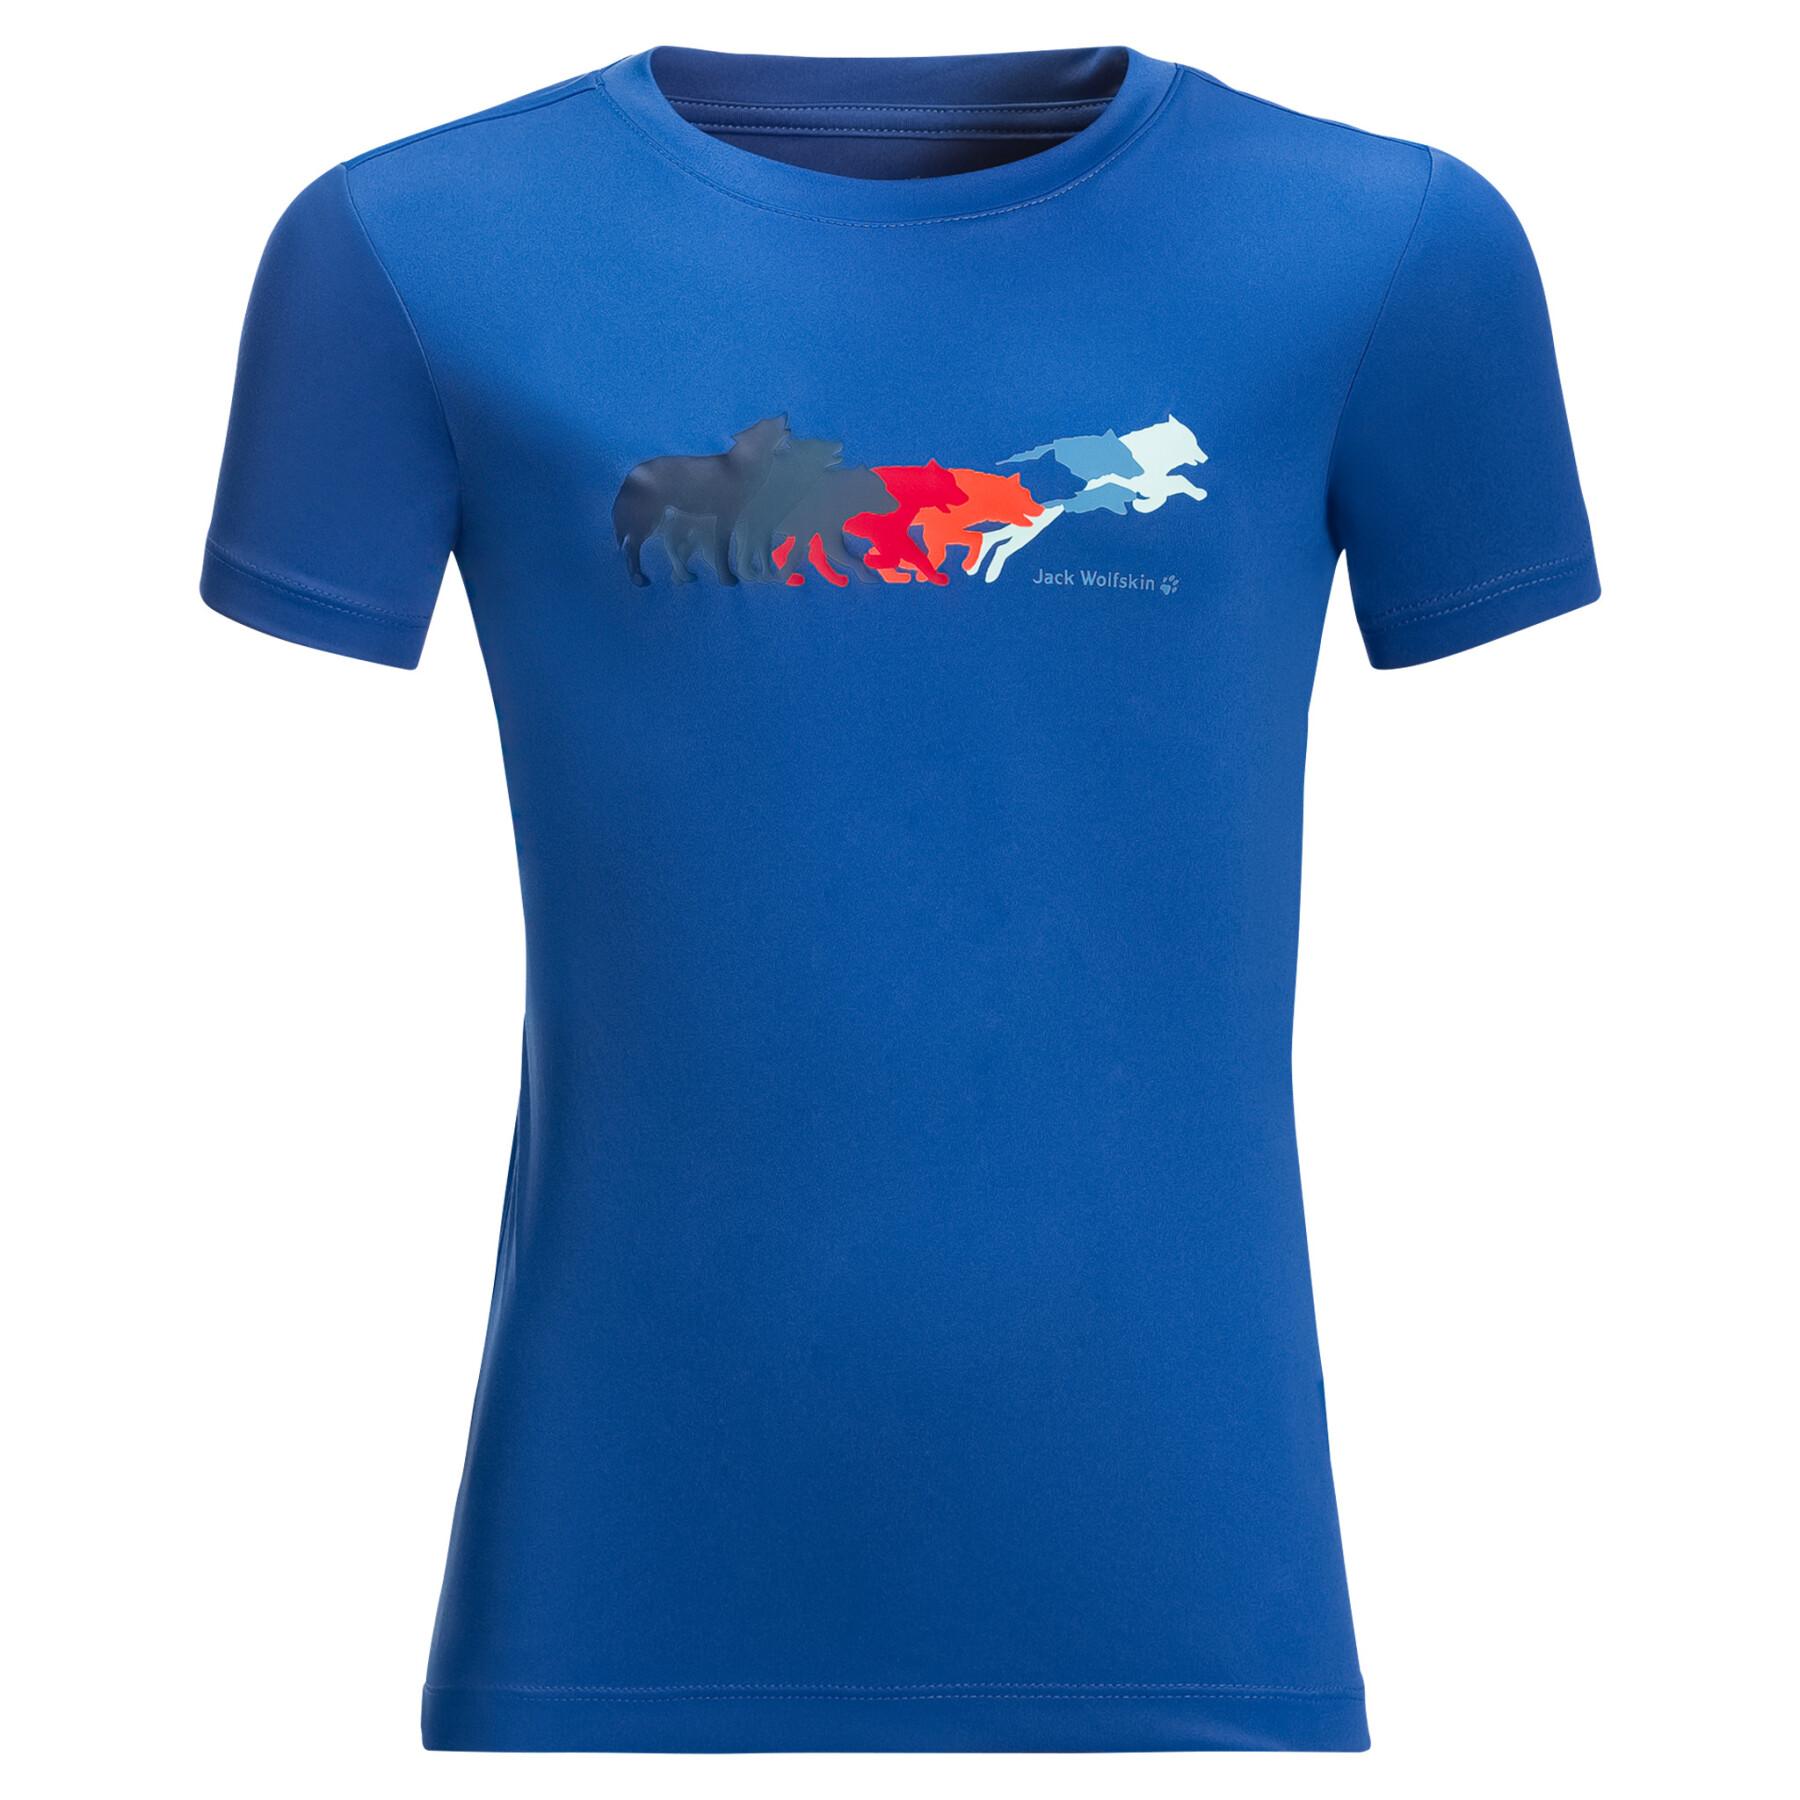 Kinder-T-shirt Jack Wolfskin Jumping Wolf